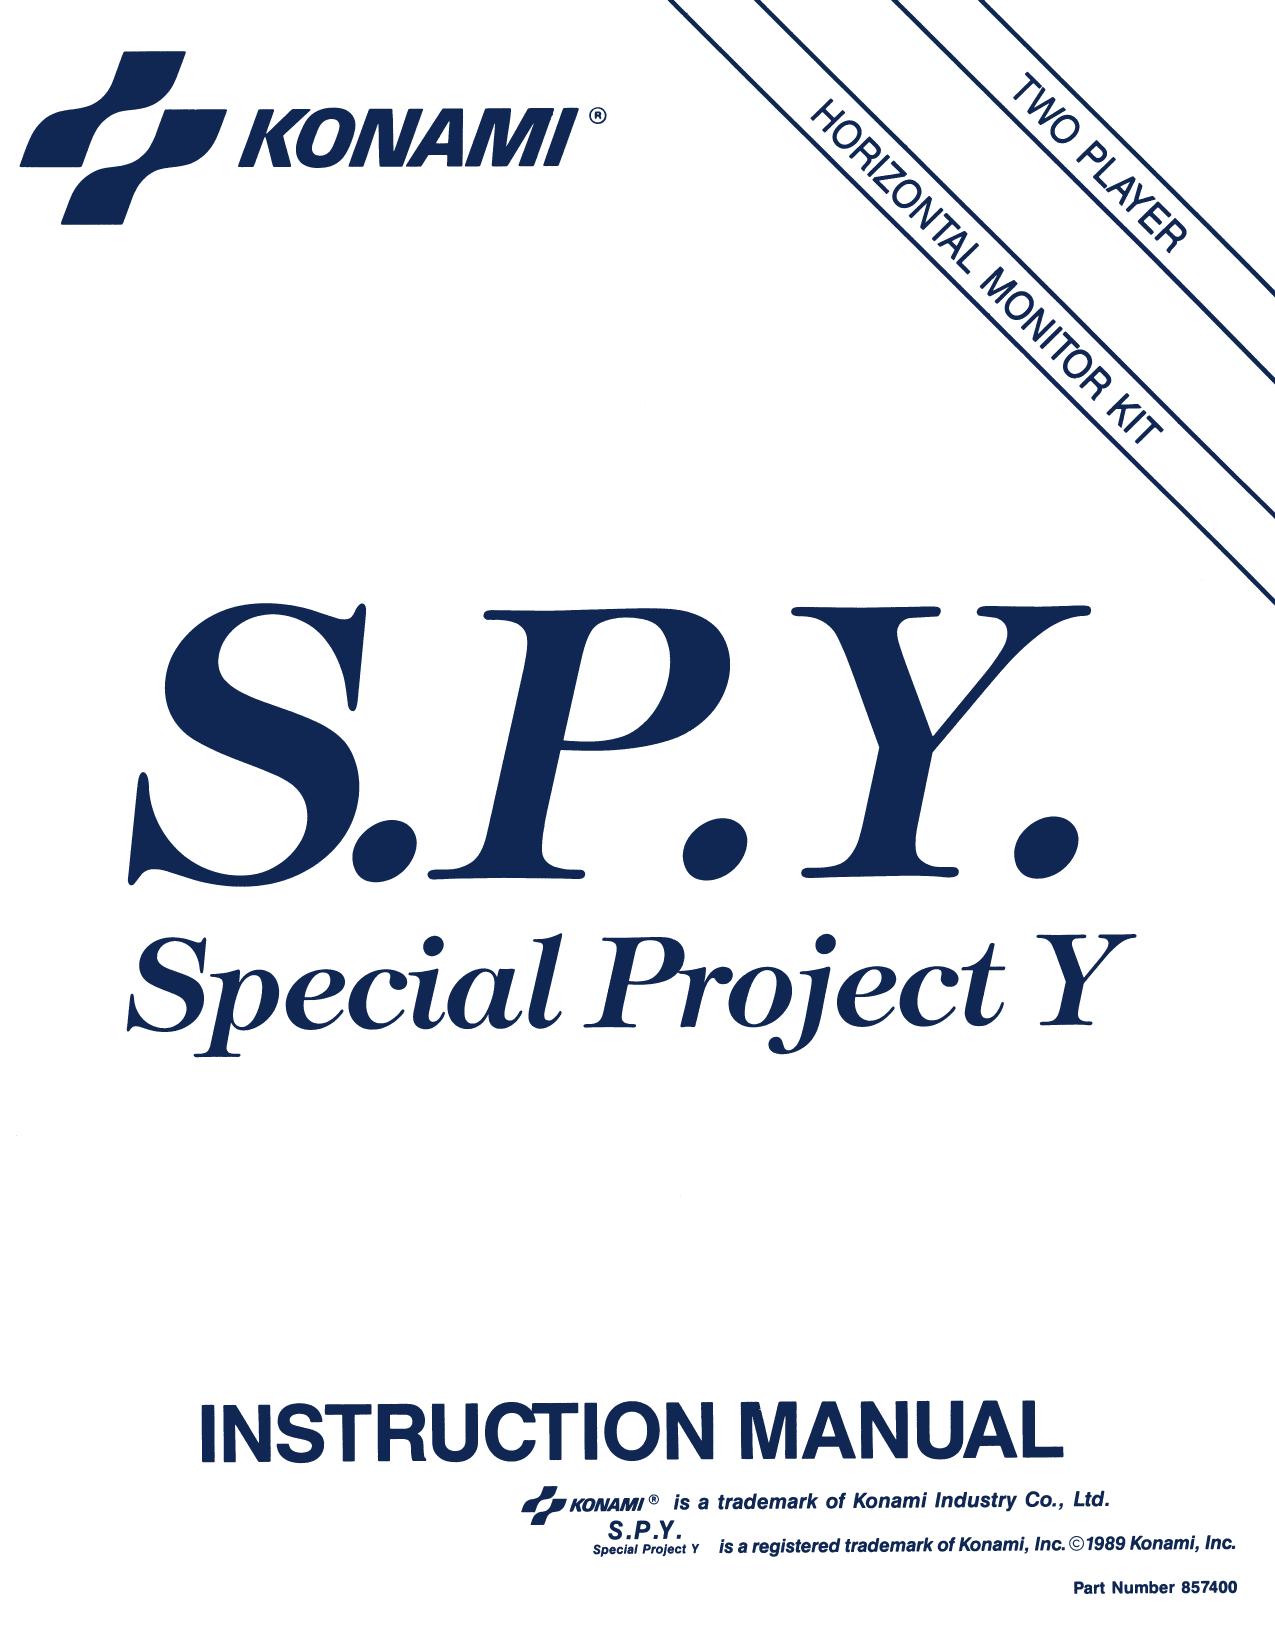 Special Project Y (SPY)